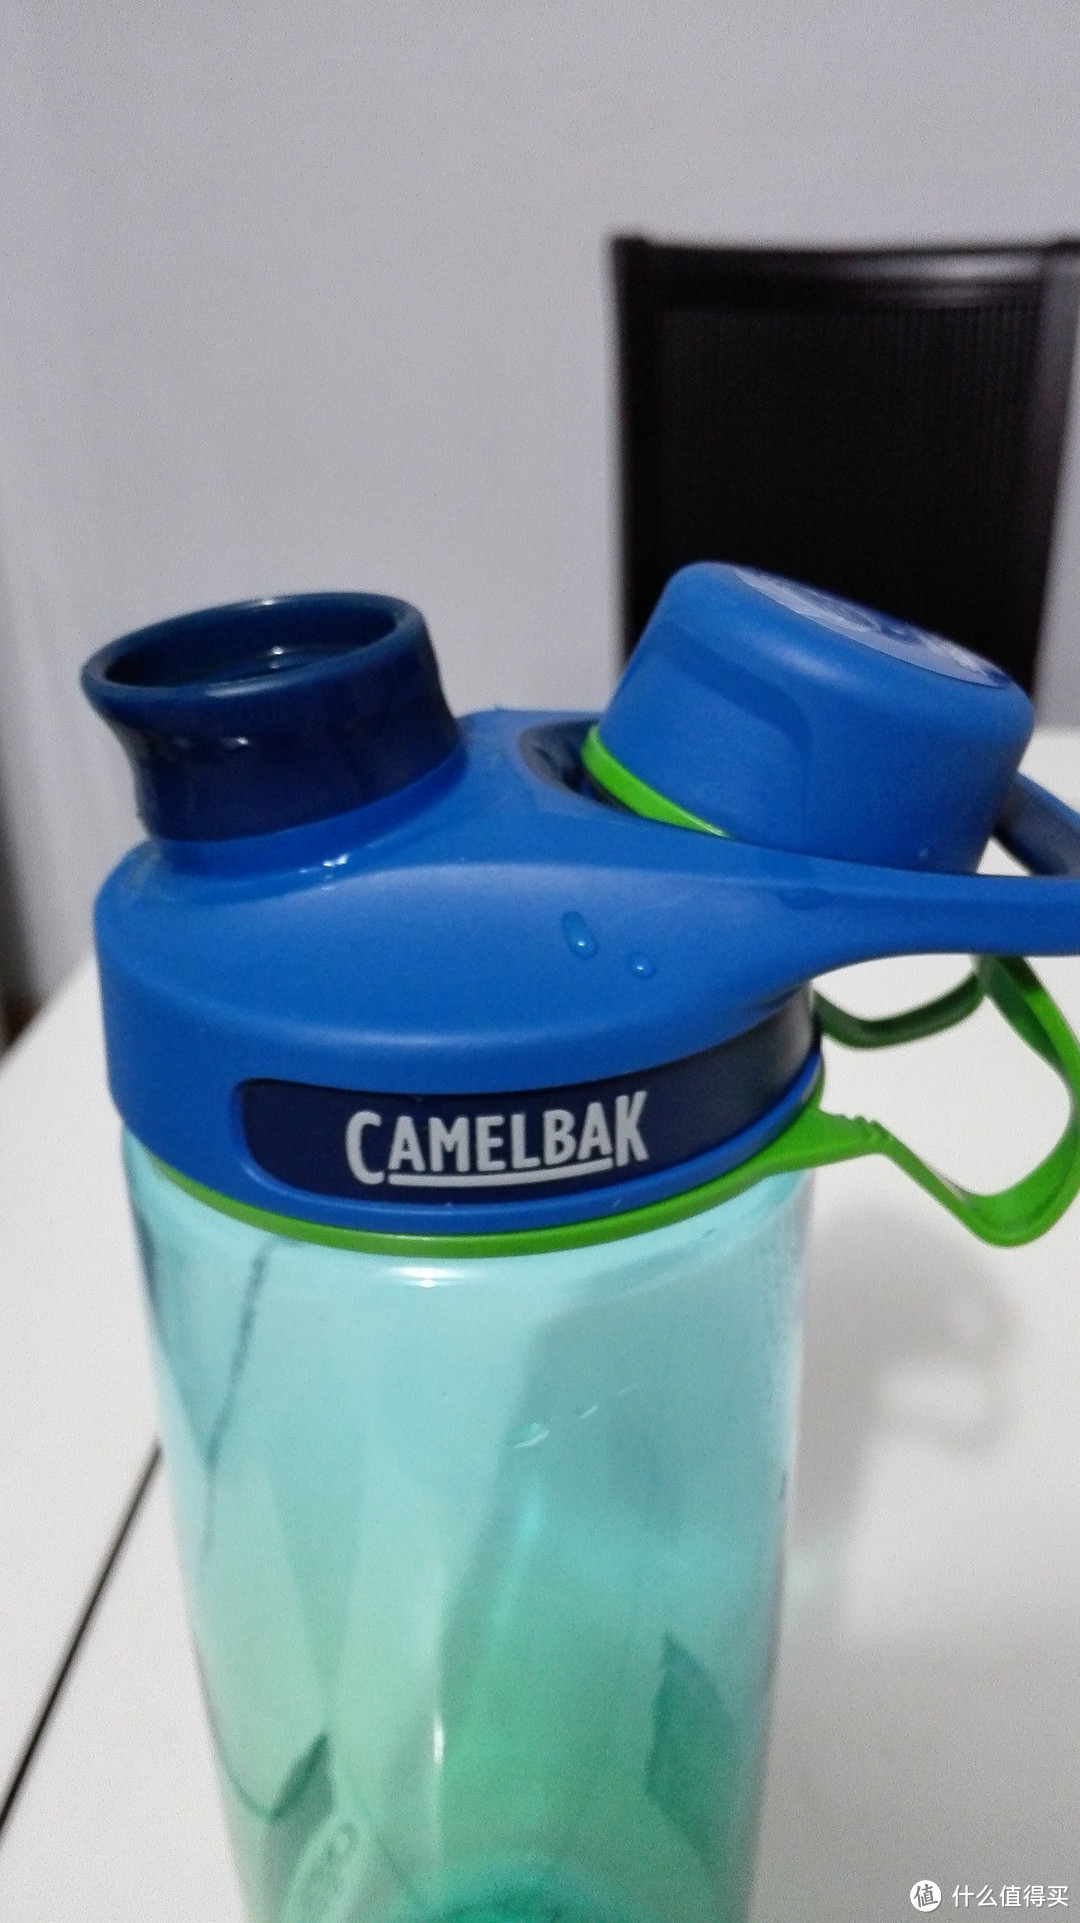 Camelbak 驼峰龙口水壶便携防漏水杯